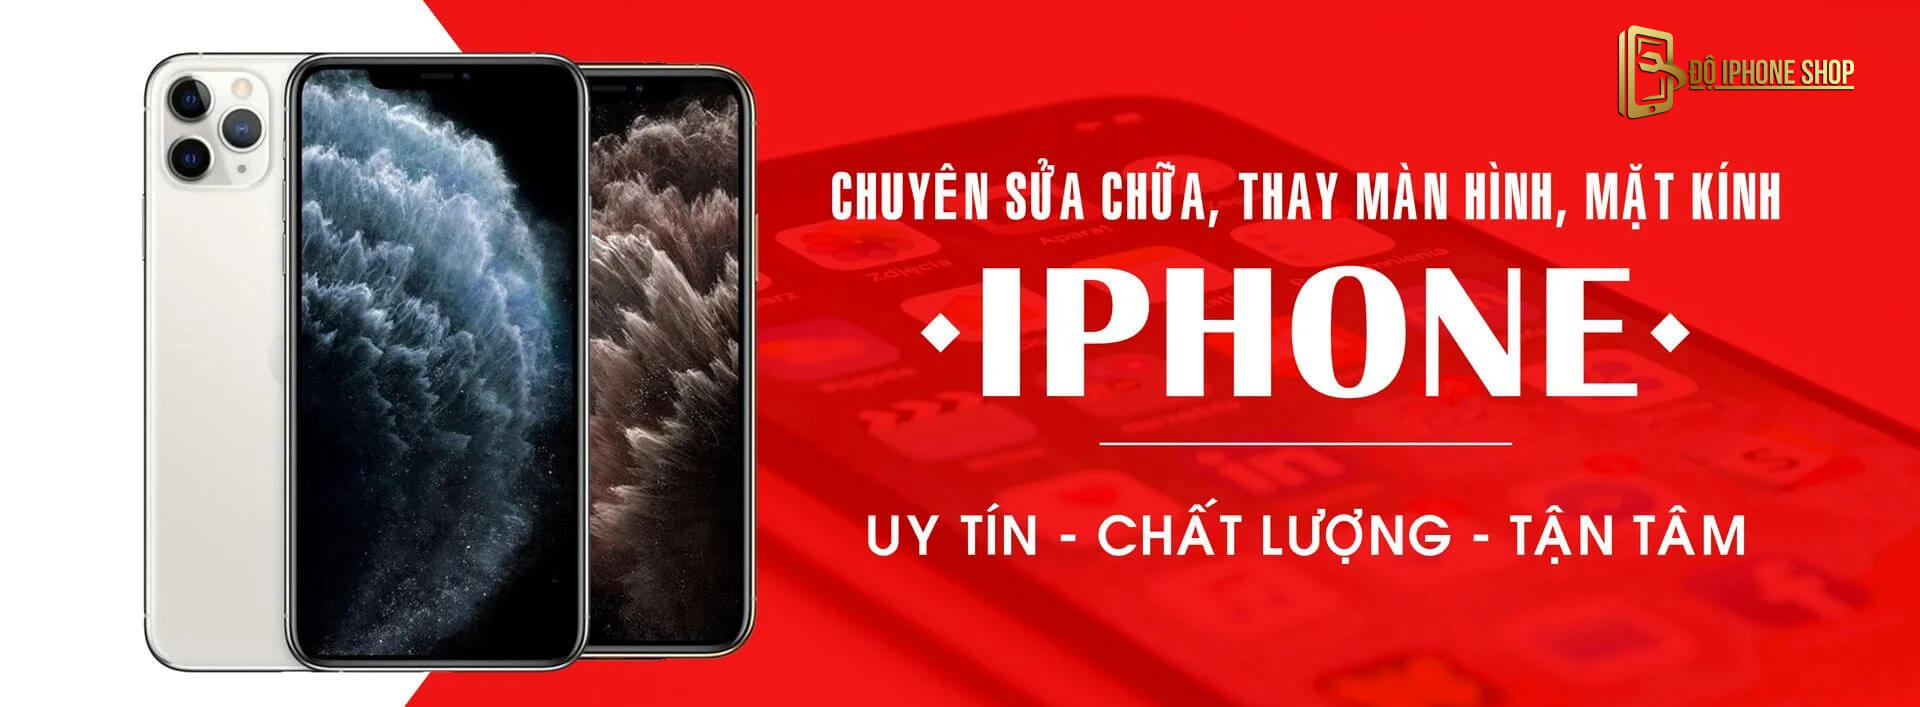 Lợi ích việc thay thế màn hình iPhone Hà Nội